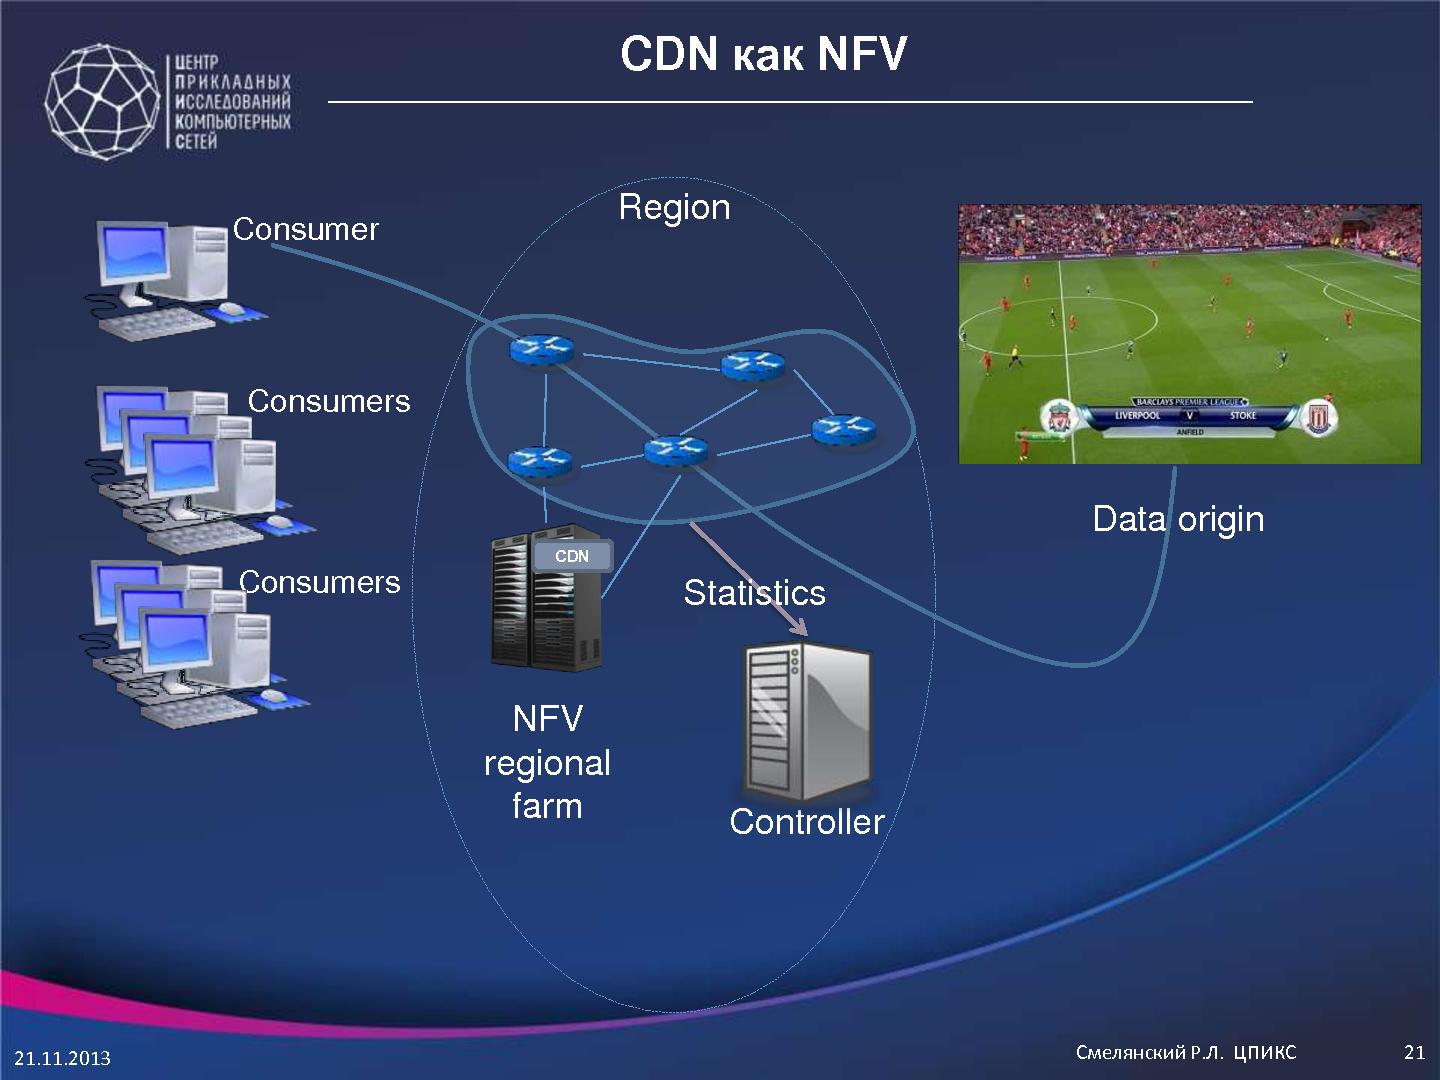 Файл:Технологии SDN и NFV в облачных структурах операторов связи и провайдеров (Руслан Смелянский, ROSS-2014).pdf